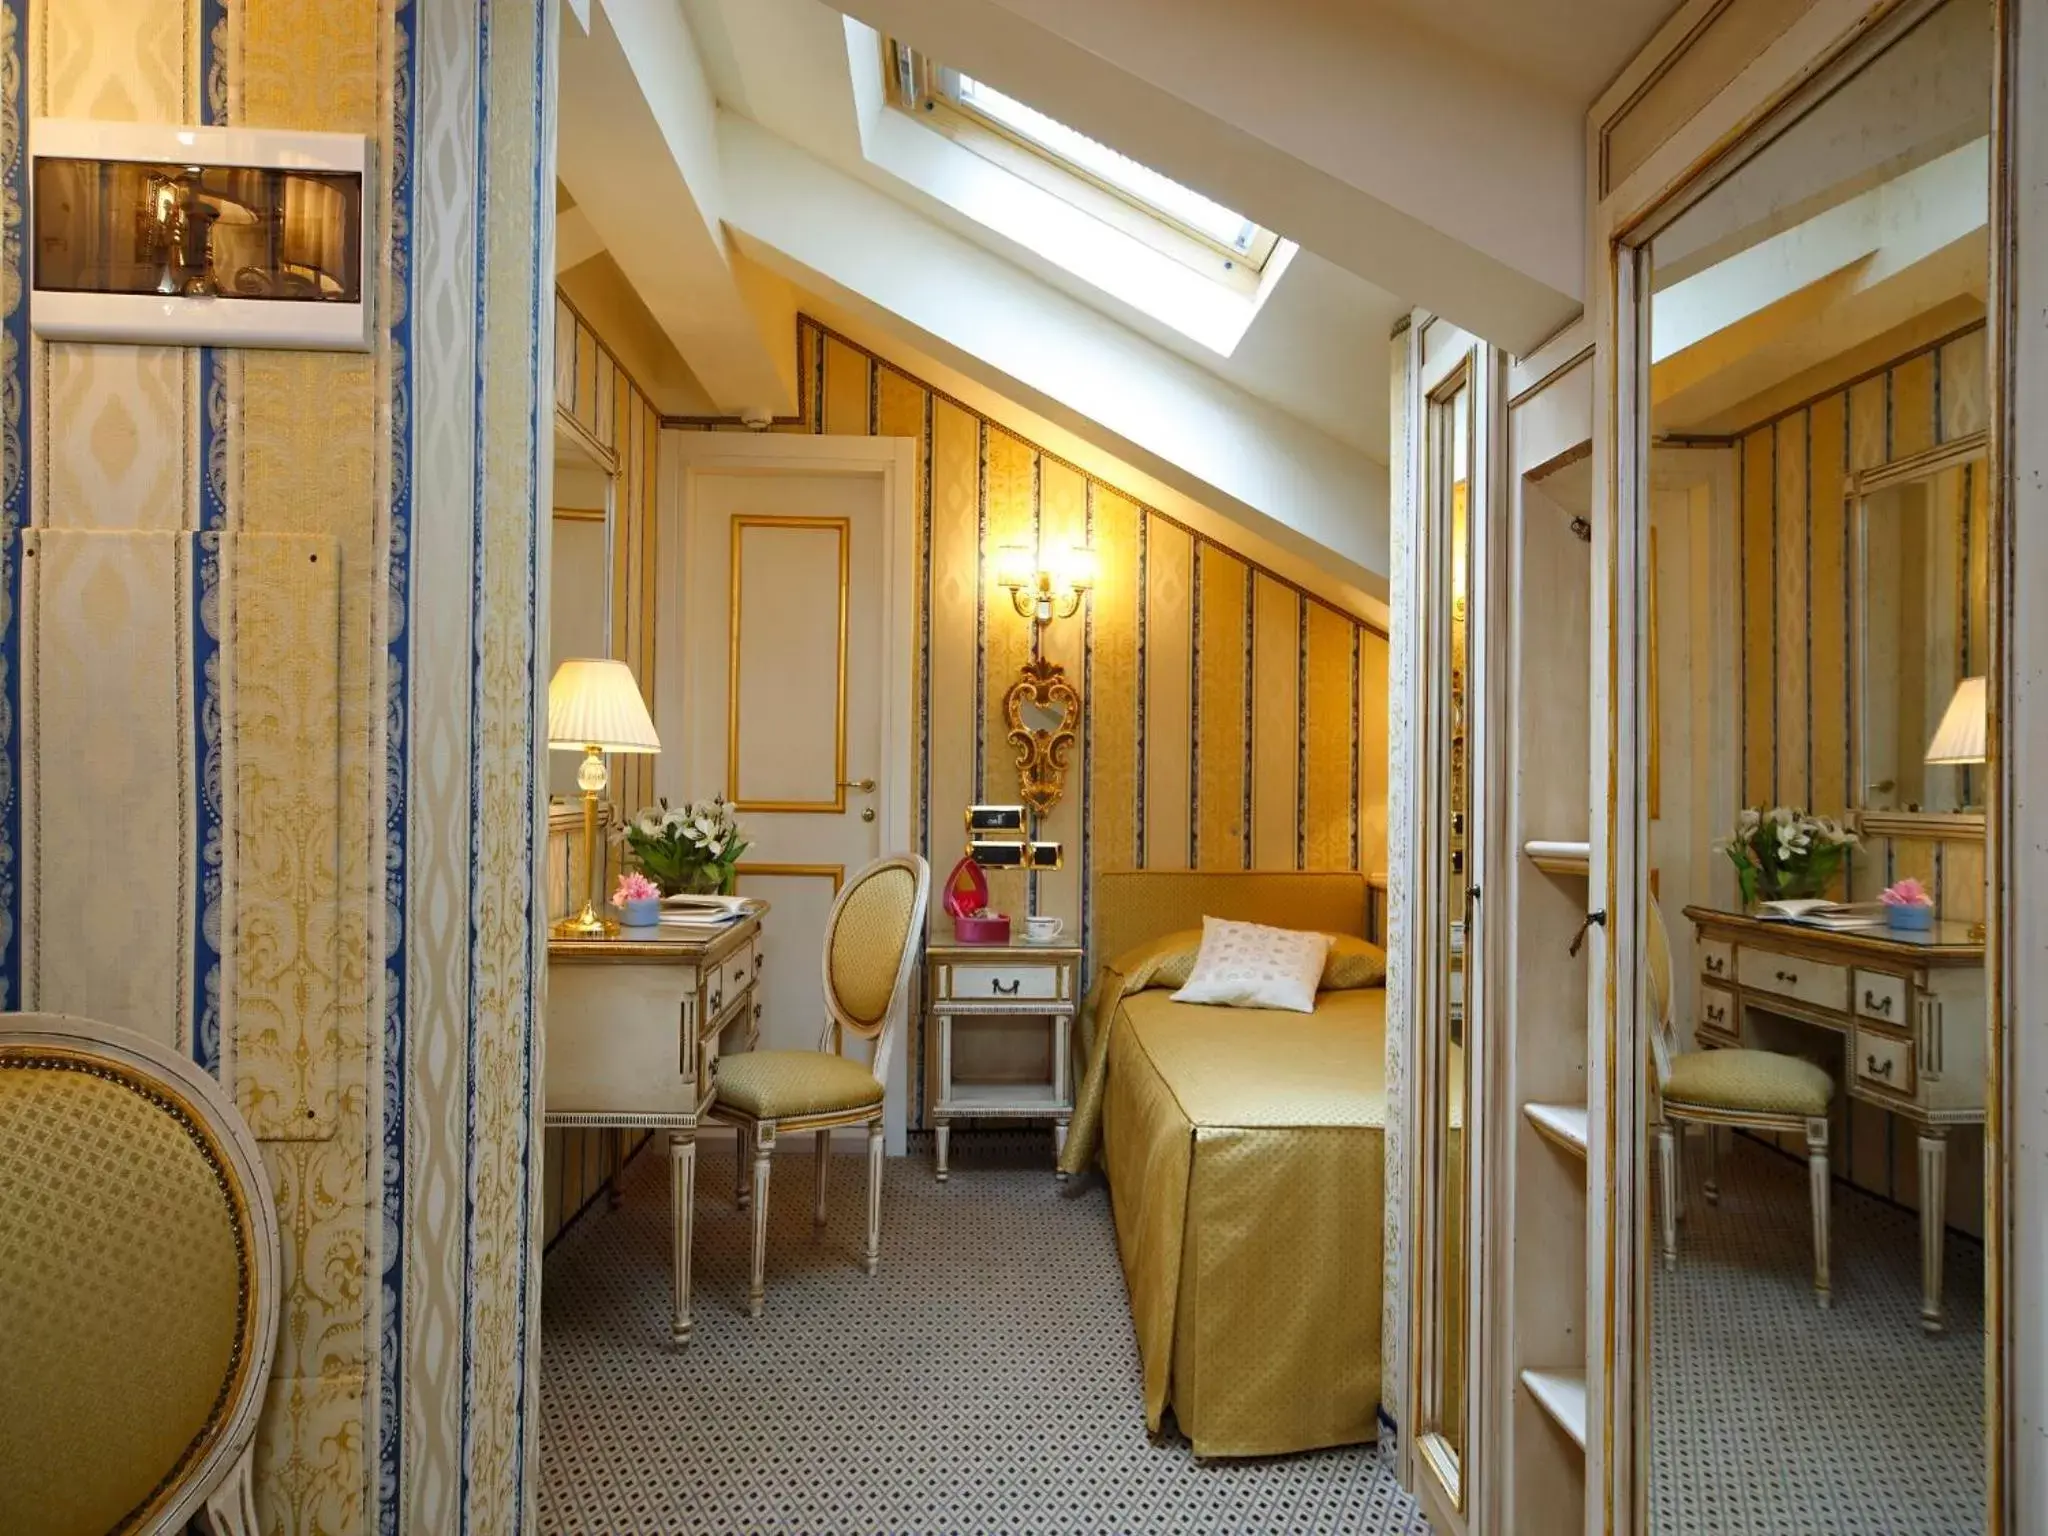 Small Double Room - Annex in Hotel Ca' dei Conti